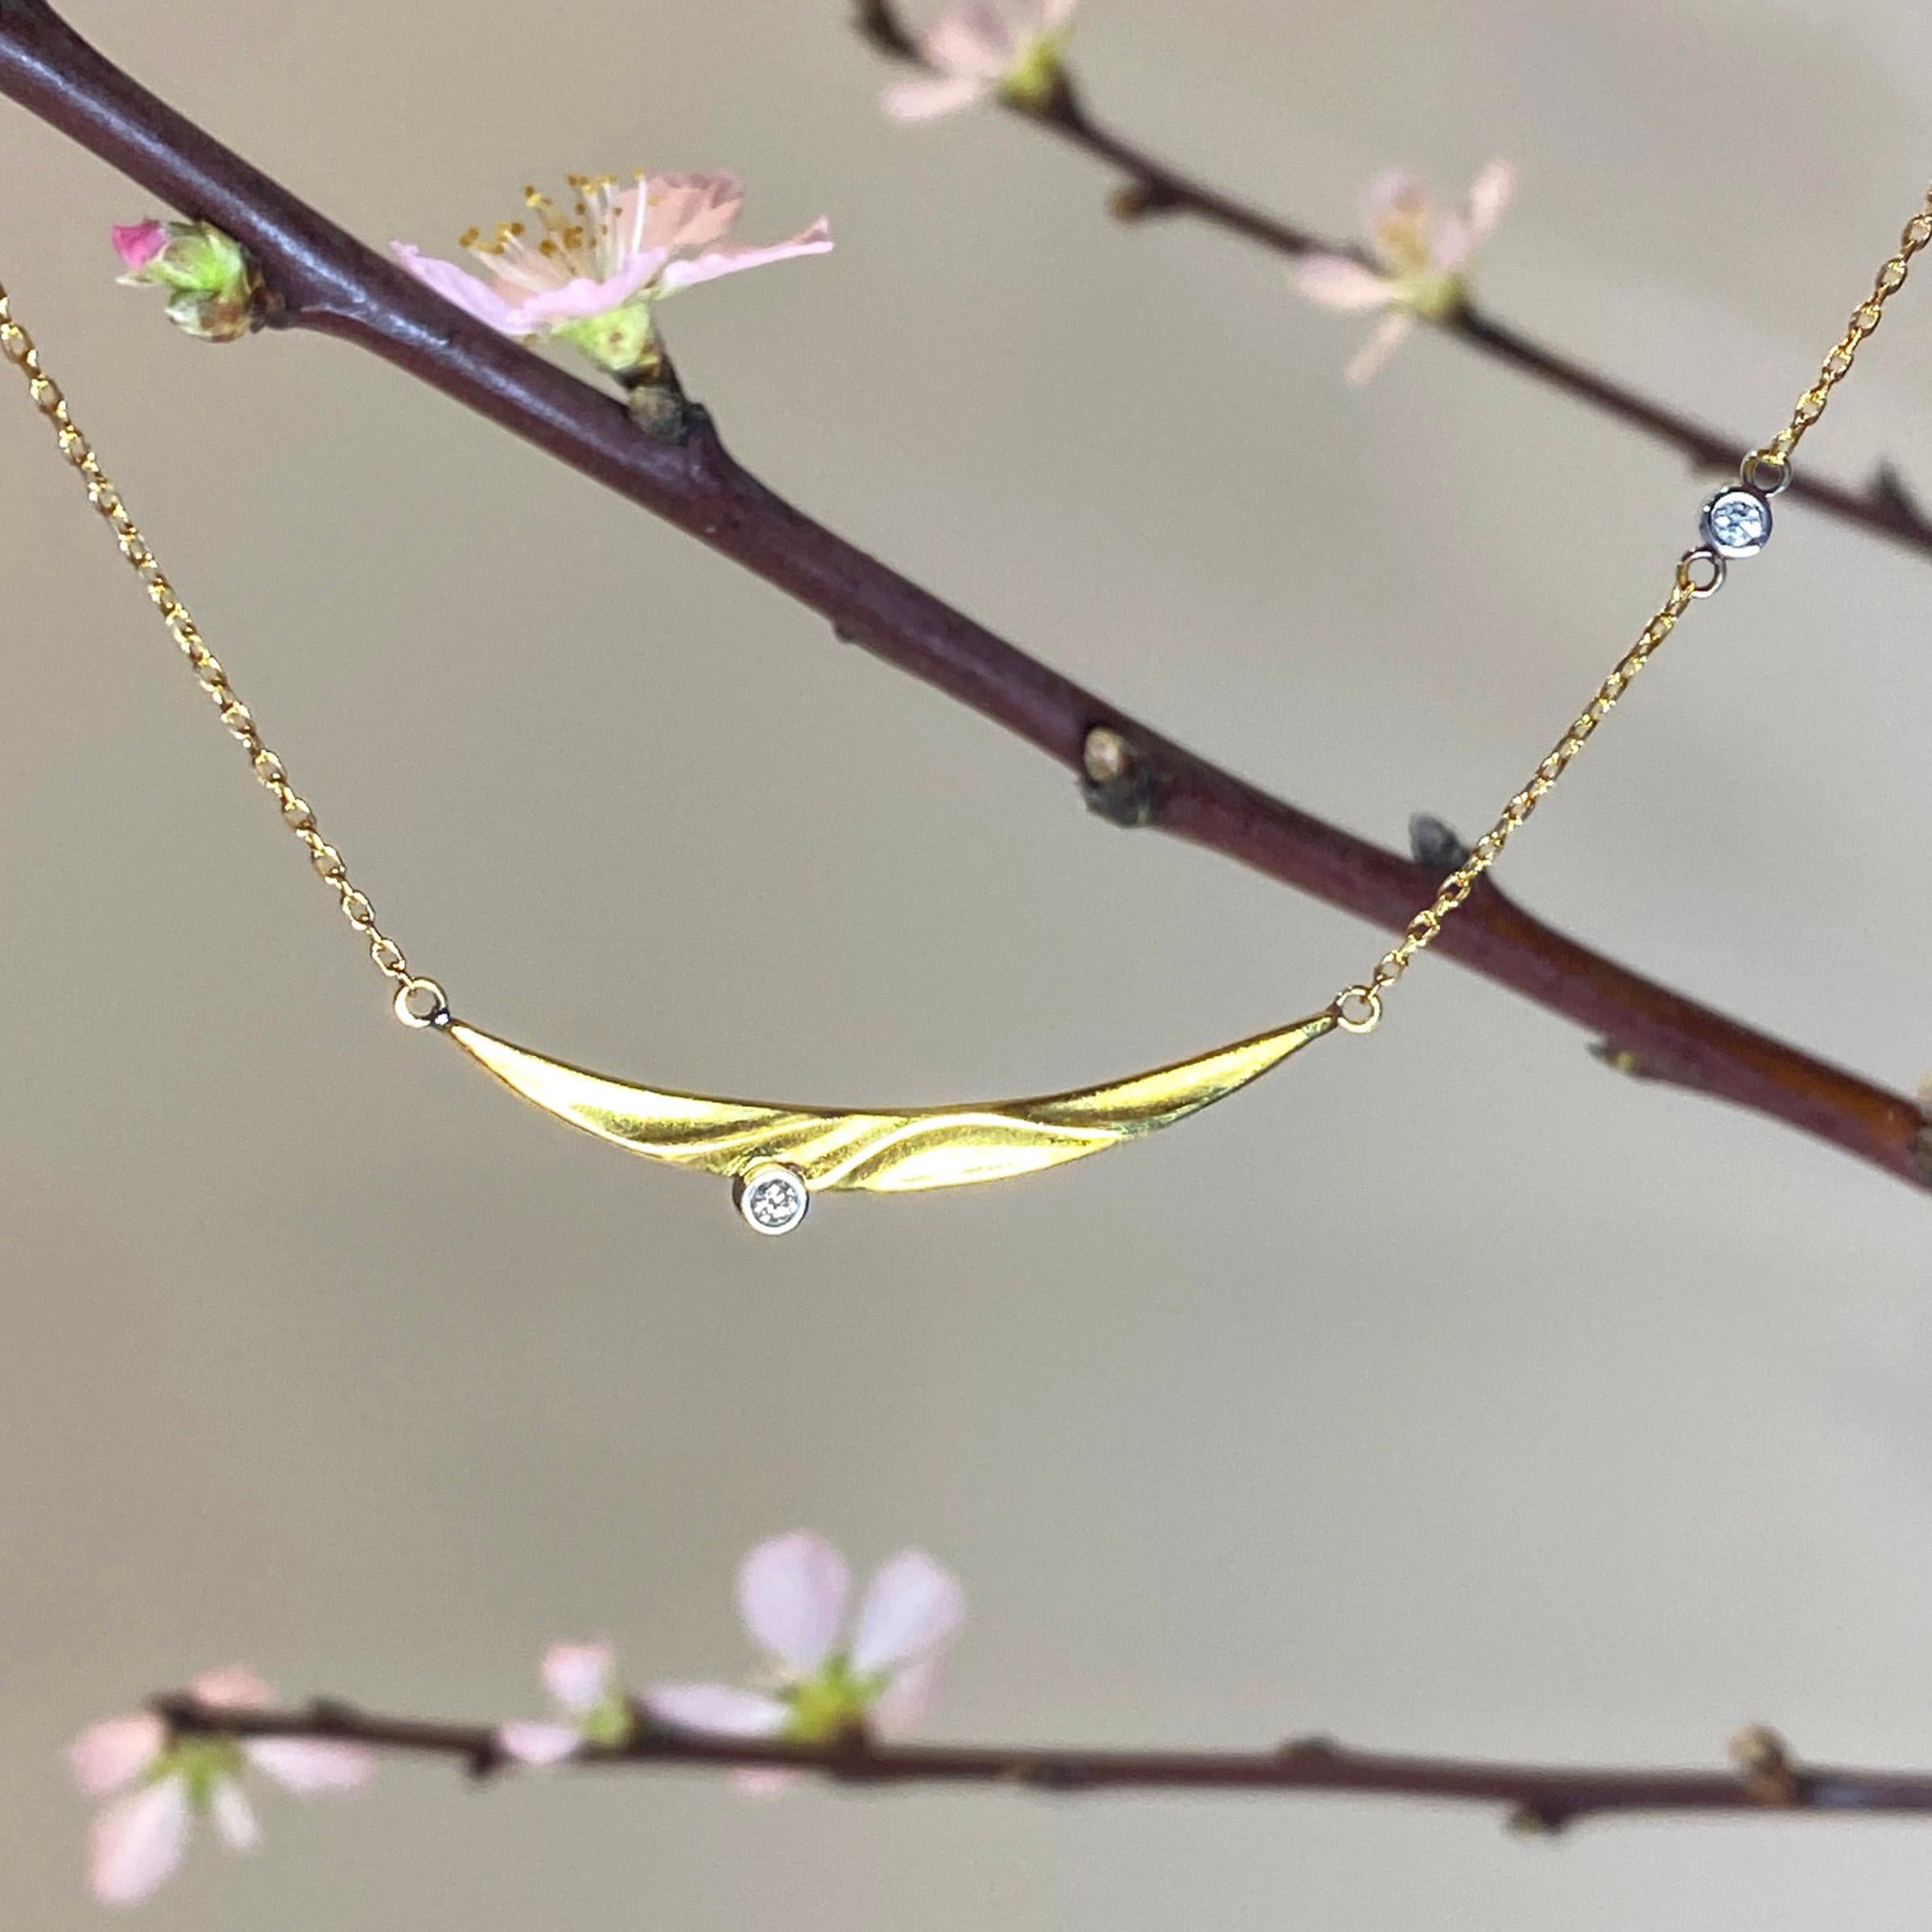 Le collier moderne Seaside de Keiko Mita est fabriqué à la main par l'artiste à partir d'or jaune 18 carats et de diamants de 0,06 carats. Le pendentif contemporain, d'une largeur de 43 mm et d'une hauteur de 5 mm, est présenté sur une chaîne câble